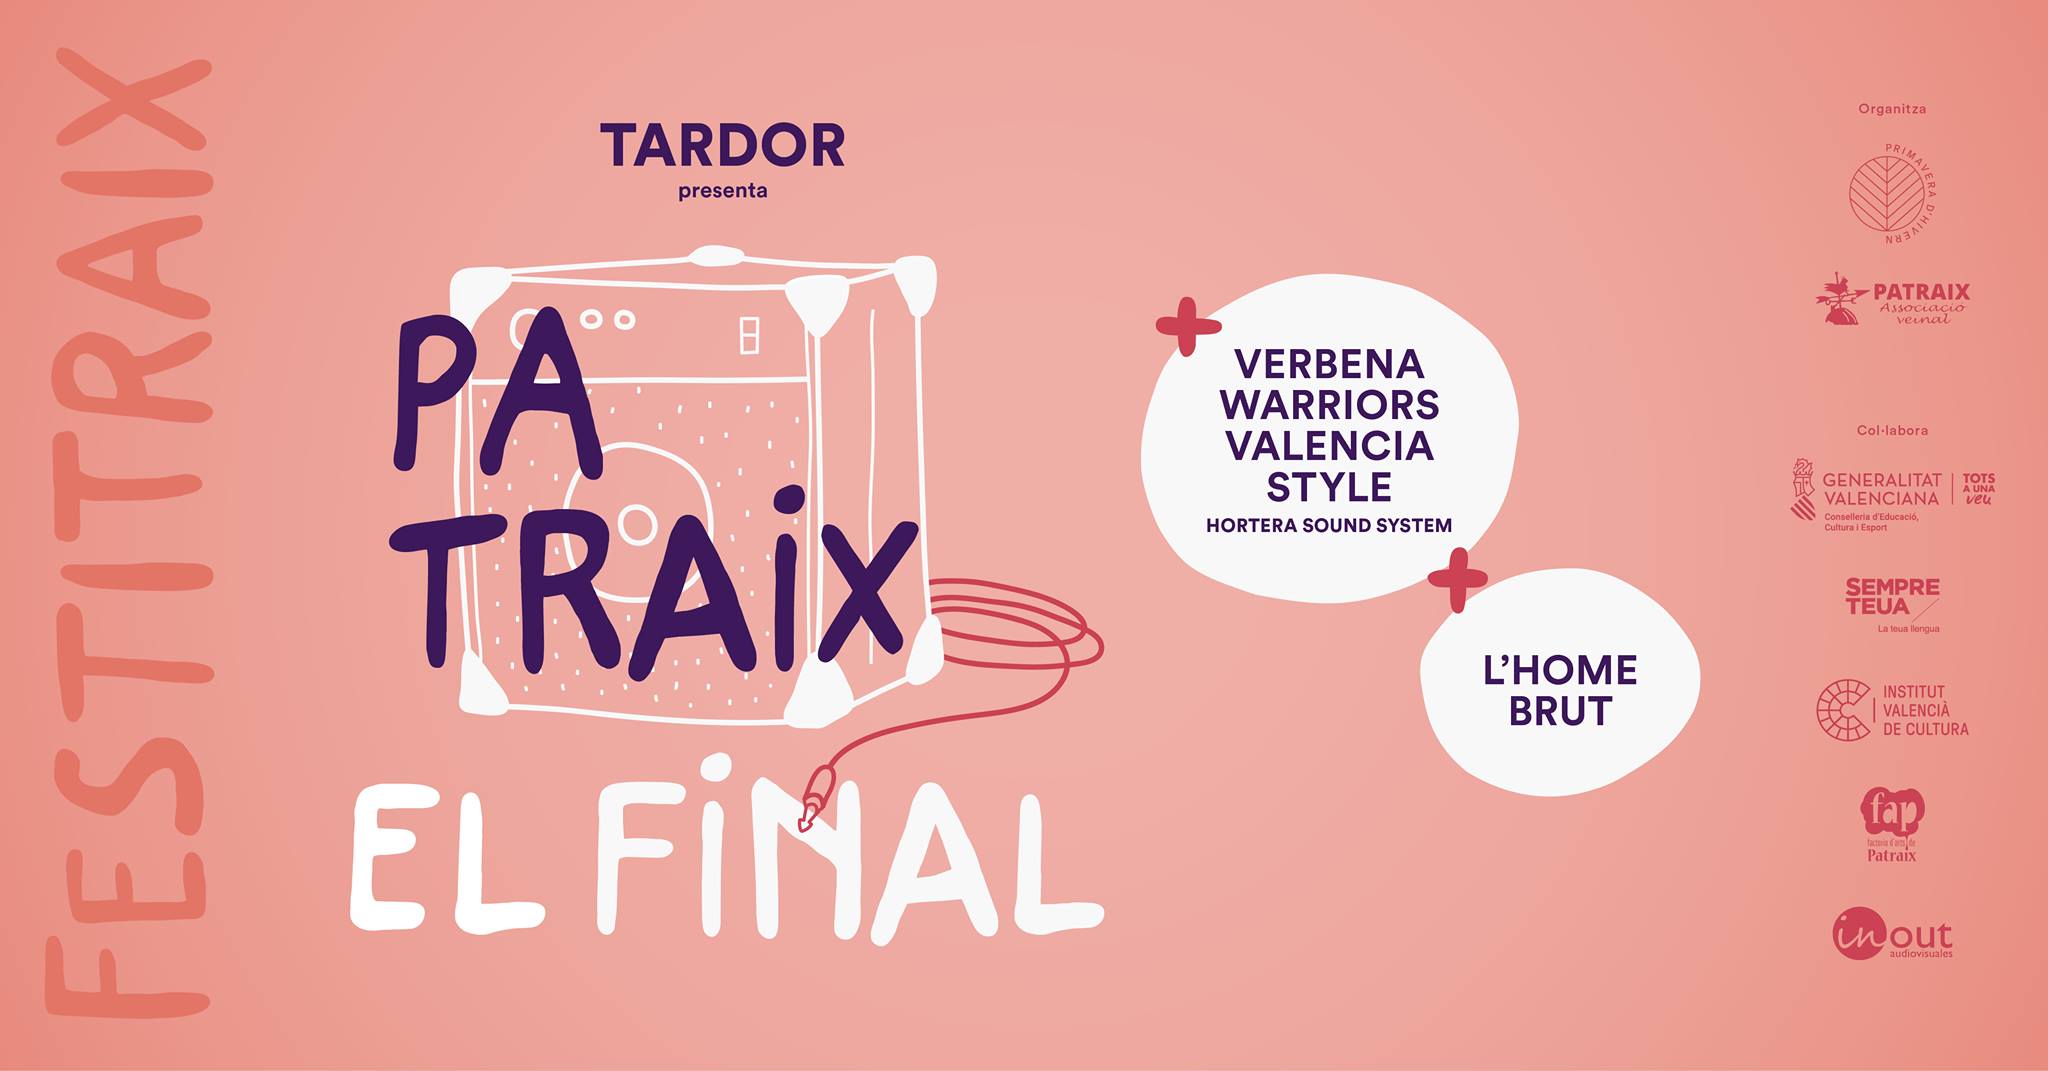 Tardor finalitza demà la gira del disc Patraix dins del Festitraix